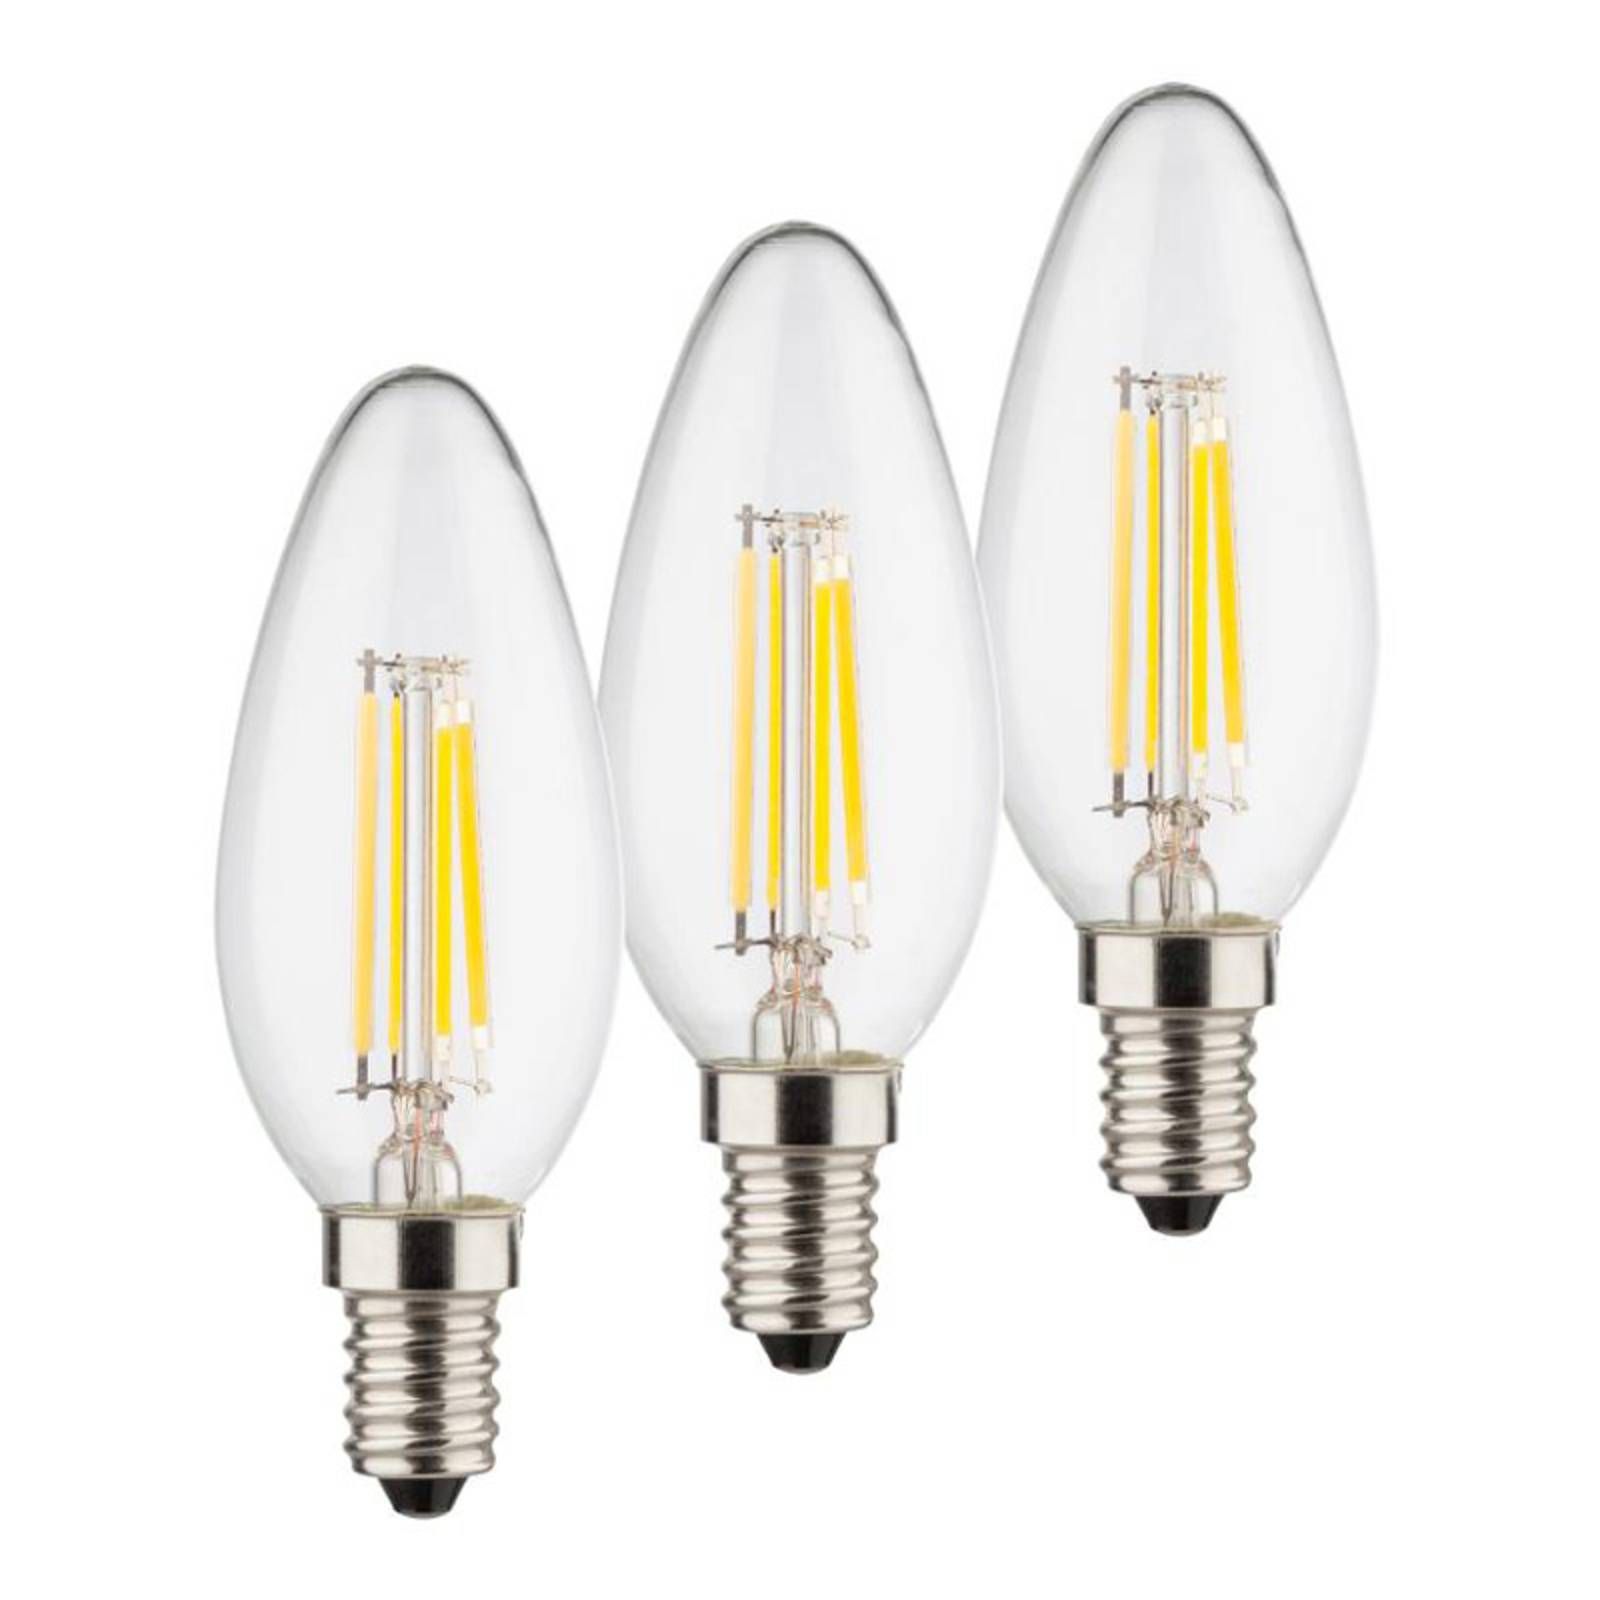 Müller-Licht Sviečková LED žiarovka E14 4W 2700K filament 3 ks, 4W, Energialuokka: E, P: 10 cm